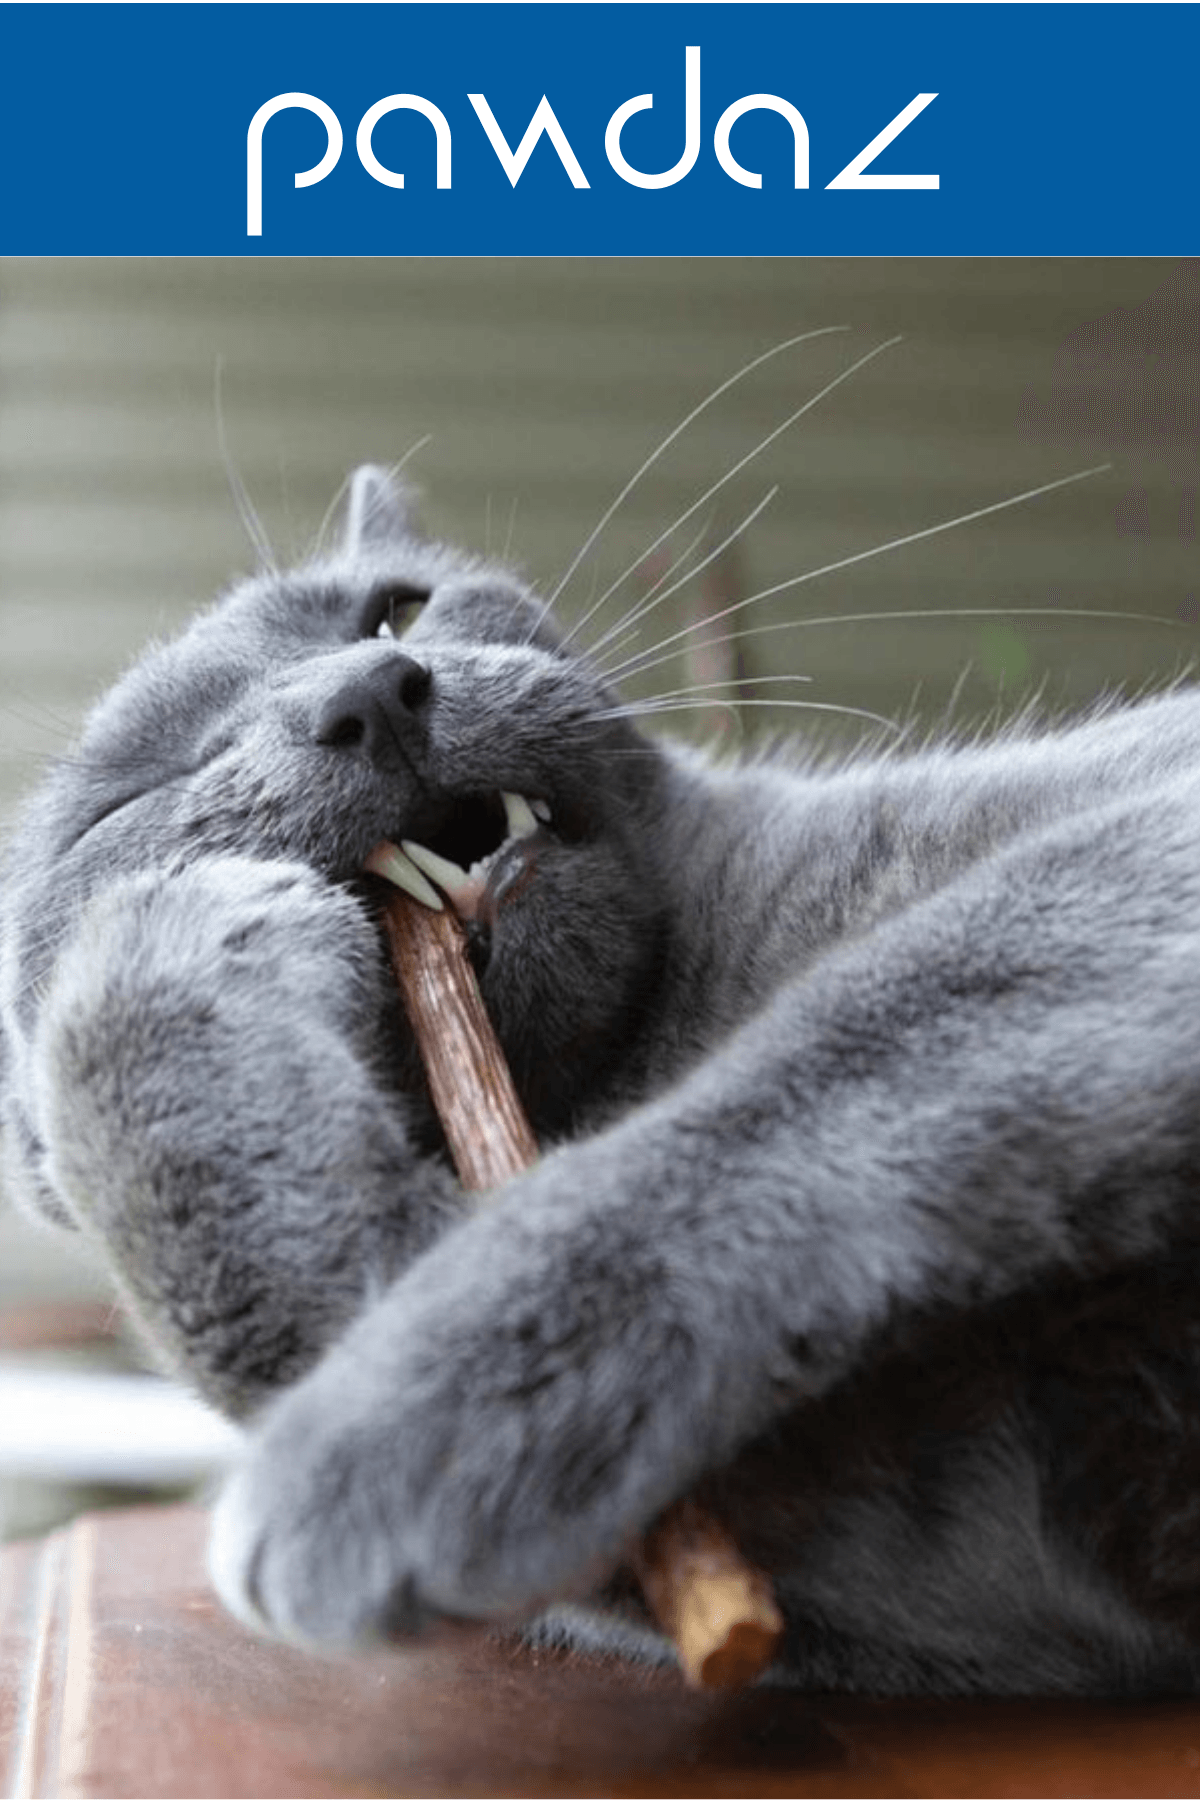 STICK - Kediler için diş temizlemeye ve stres gidermeye yardımcı oyuncak